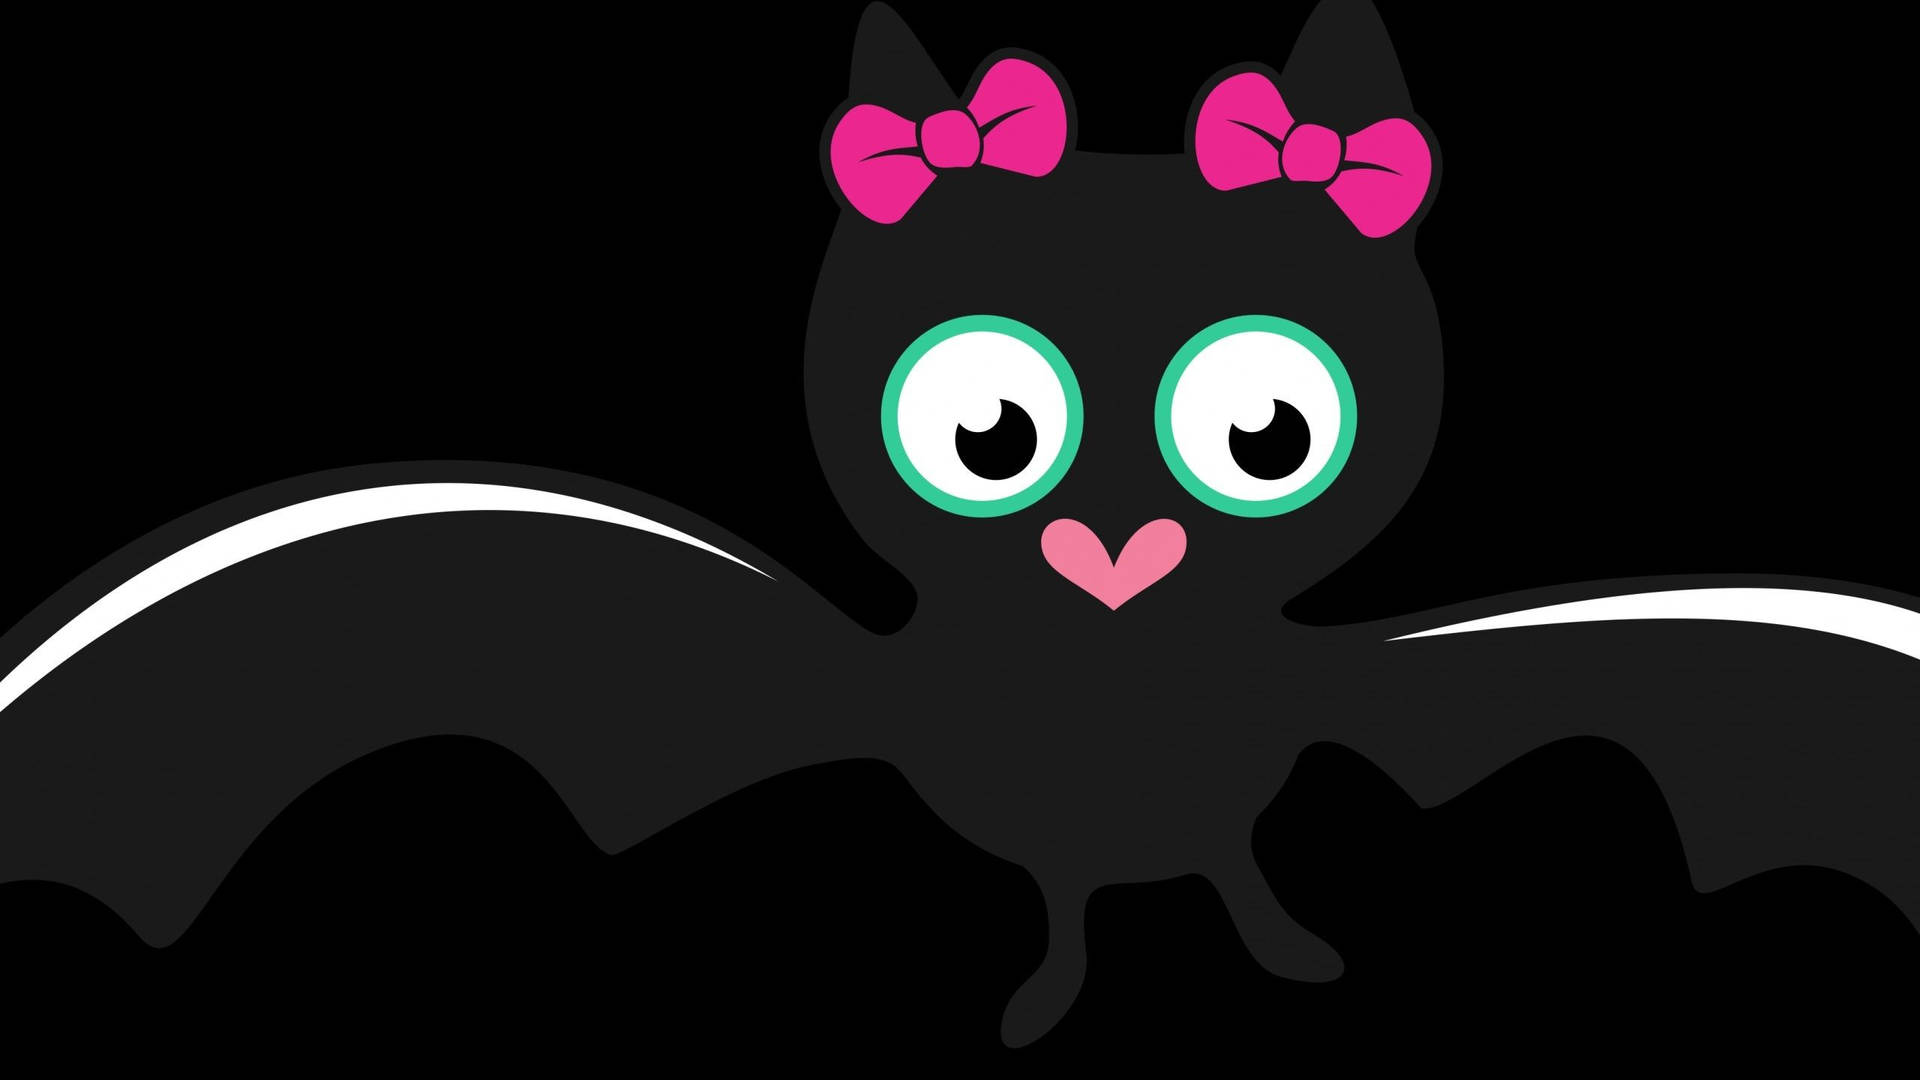 Cute Aesthetic Halloween Cartoon Bat